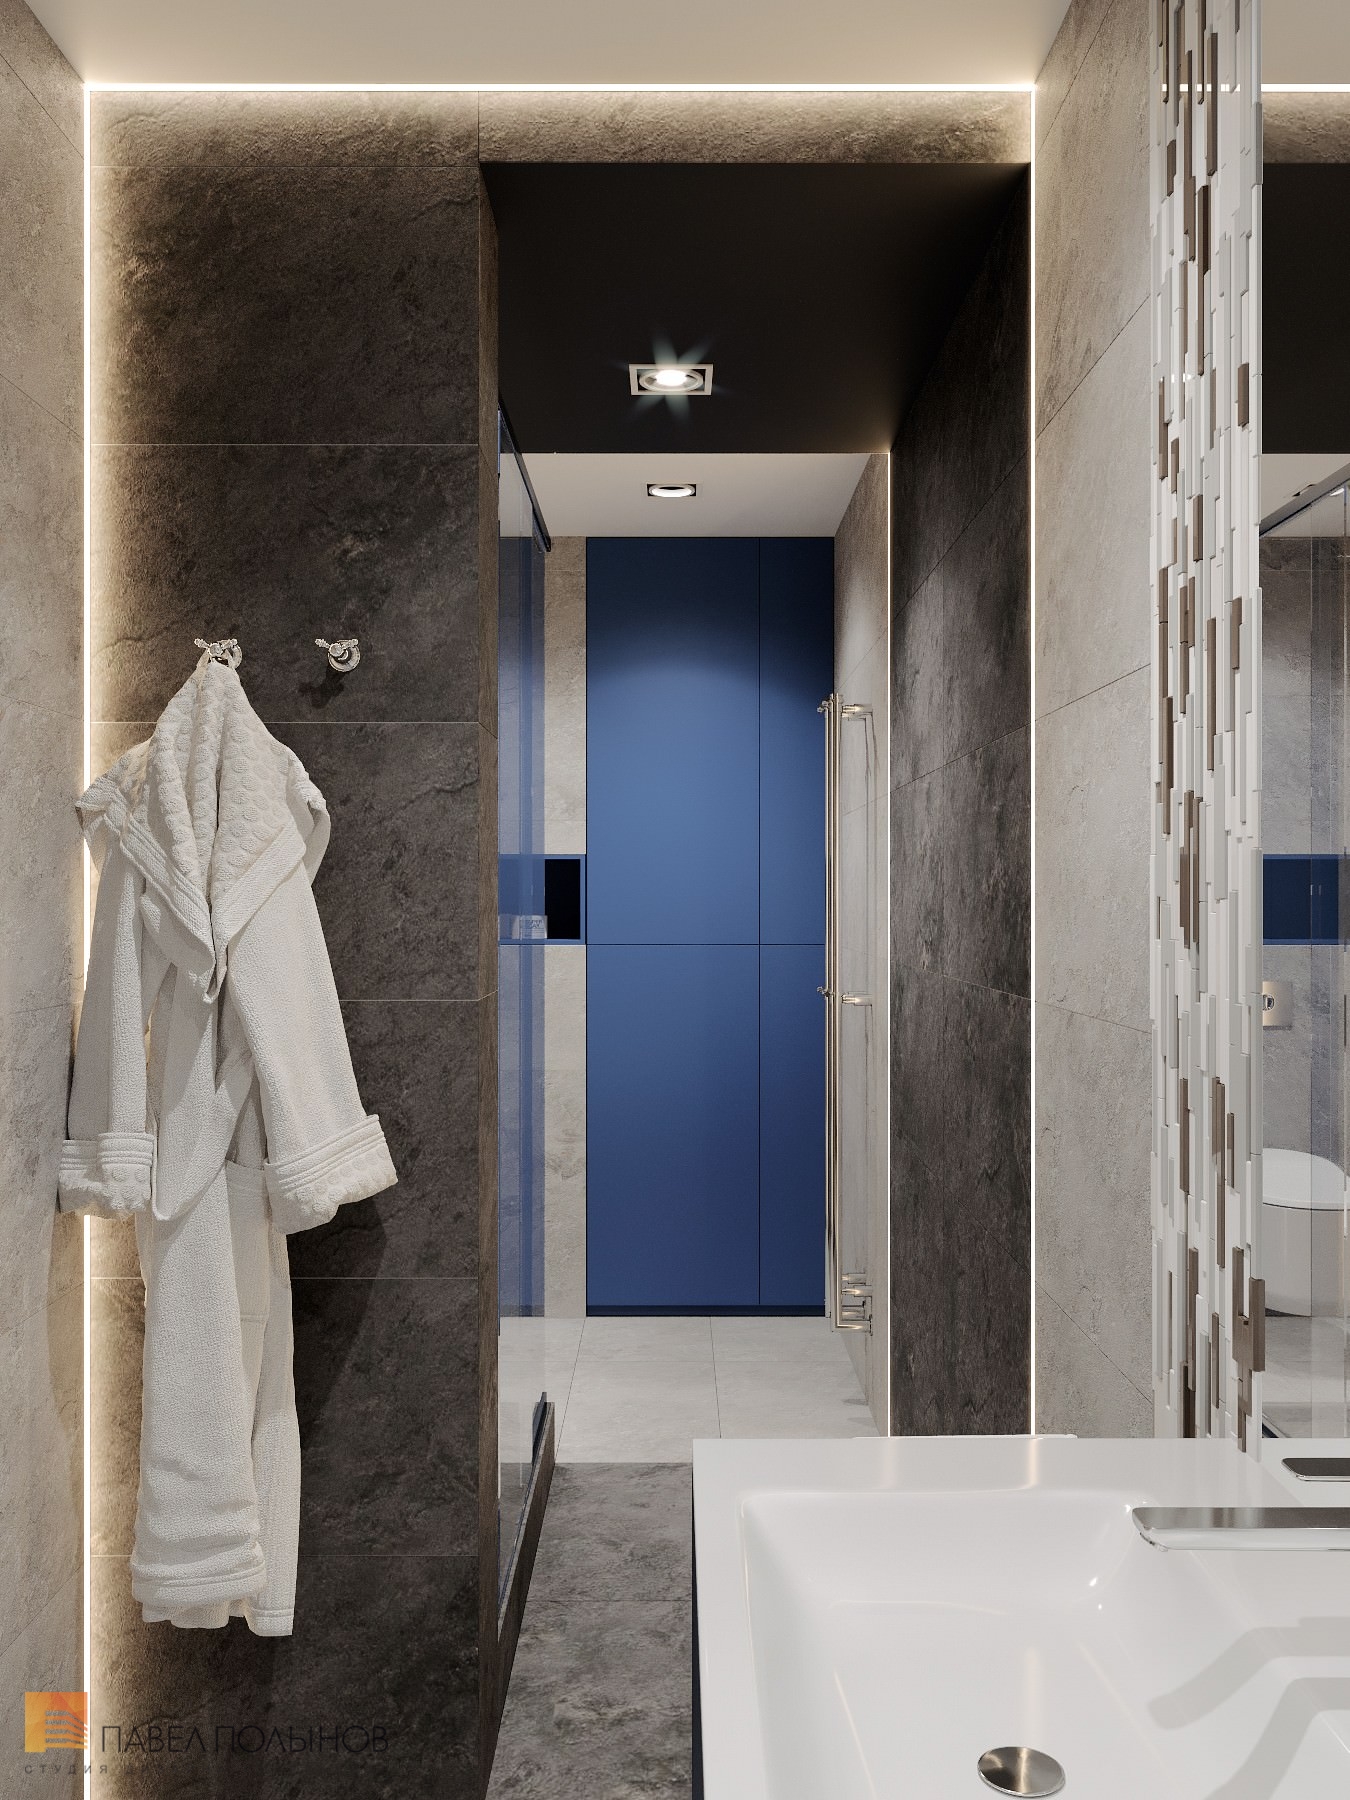 Фото интерьер ванной комнаты из проекта «Дизайн интерьер квартиры в ЖК «Кремлевские звезды», современный стиль, 133 кв.м.»